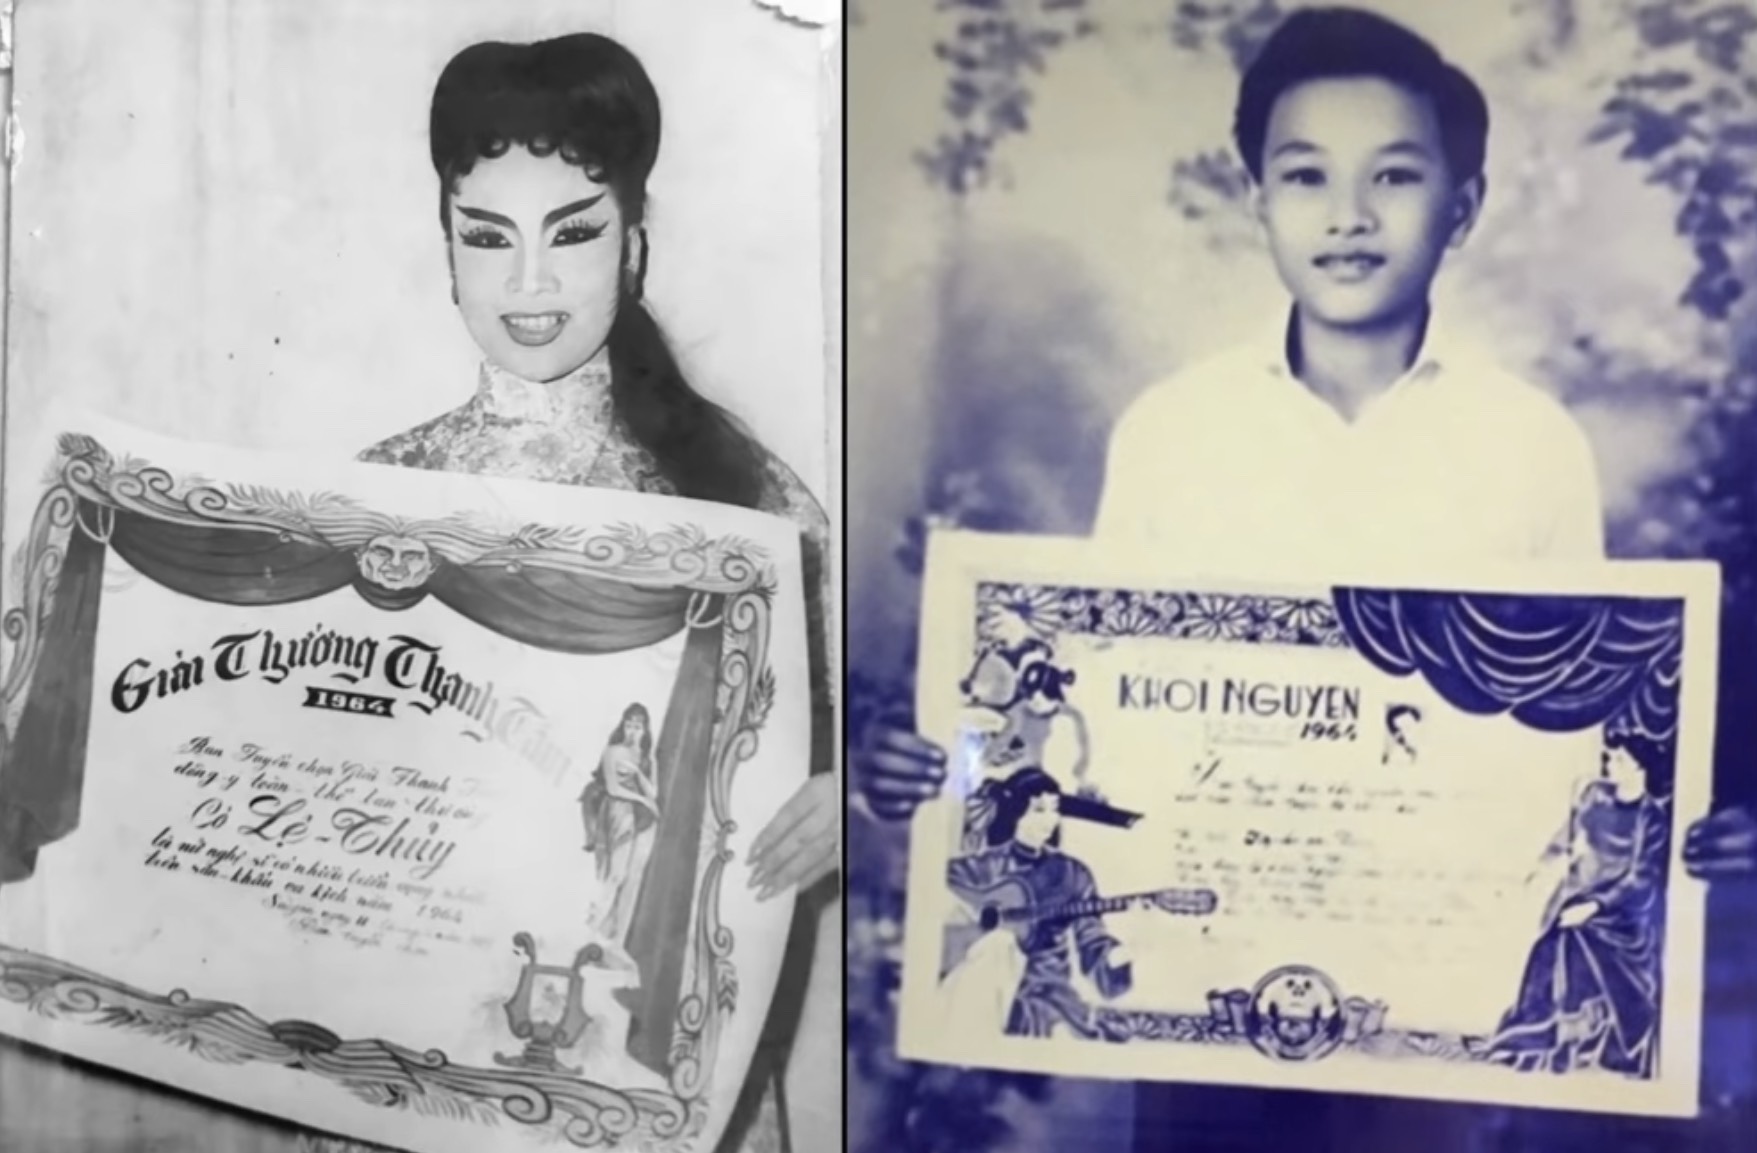 NSND Lệ Thuỷ nhận giải Thanh Tâm và NSND Minh Vương nhận giải Khôi nguyên vọng cổ năm 1964